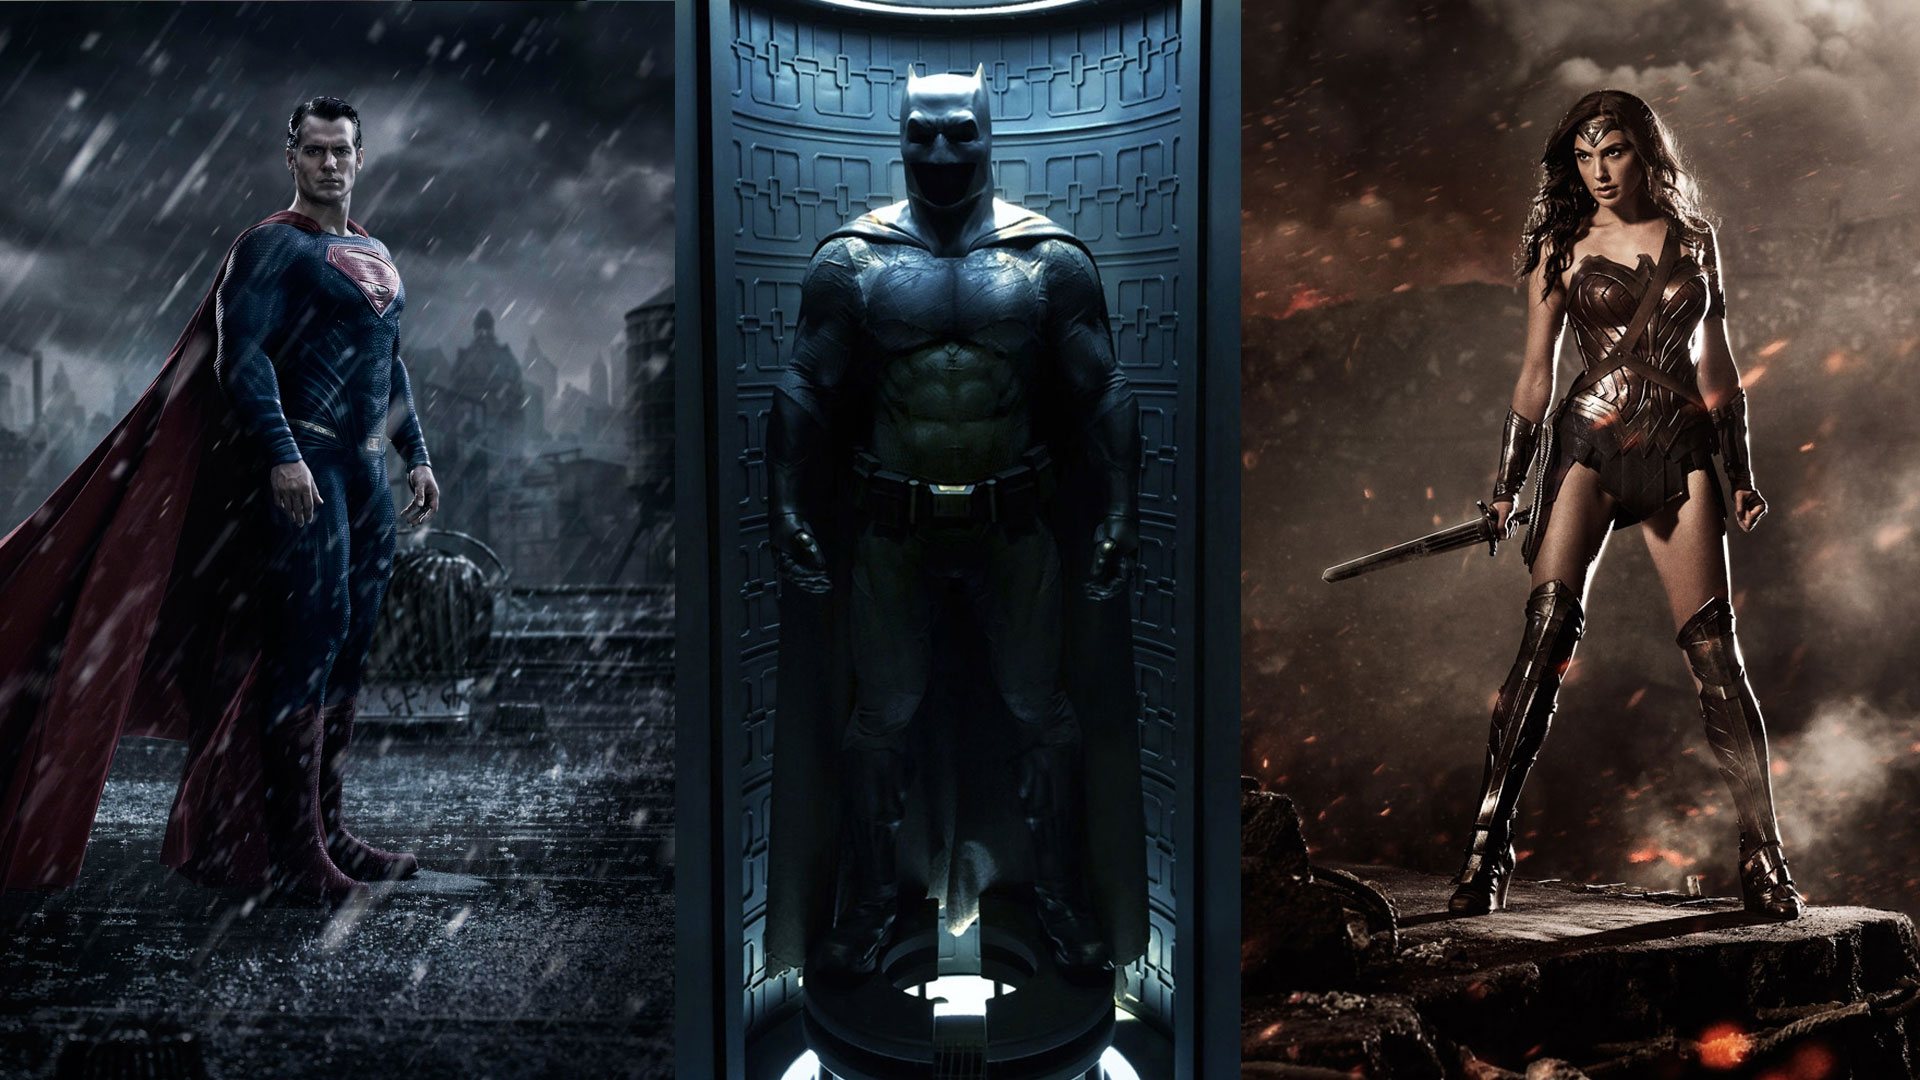 HD Batman Wallpaper for Mobile in 2023  Batman wallpaper, Avengers  wallpaper, Batman wallpaper iphone